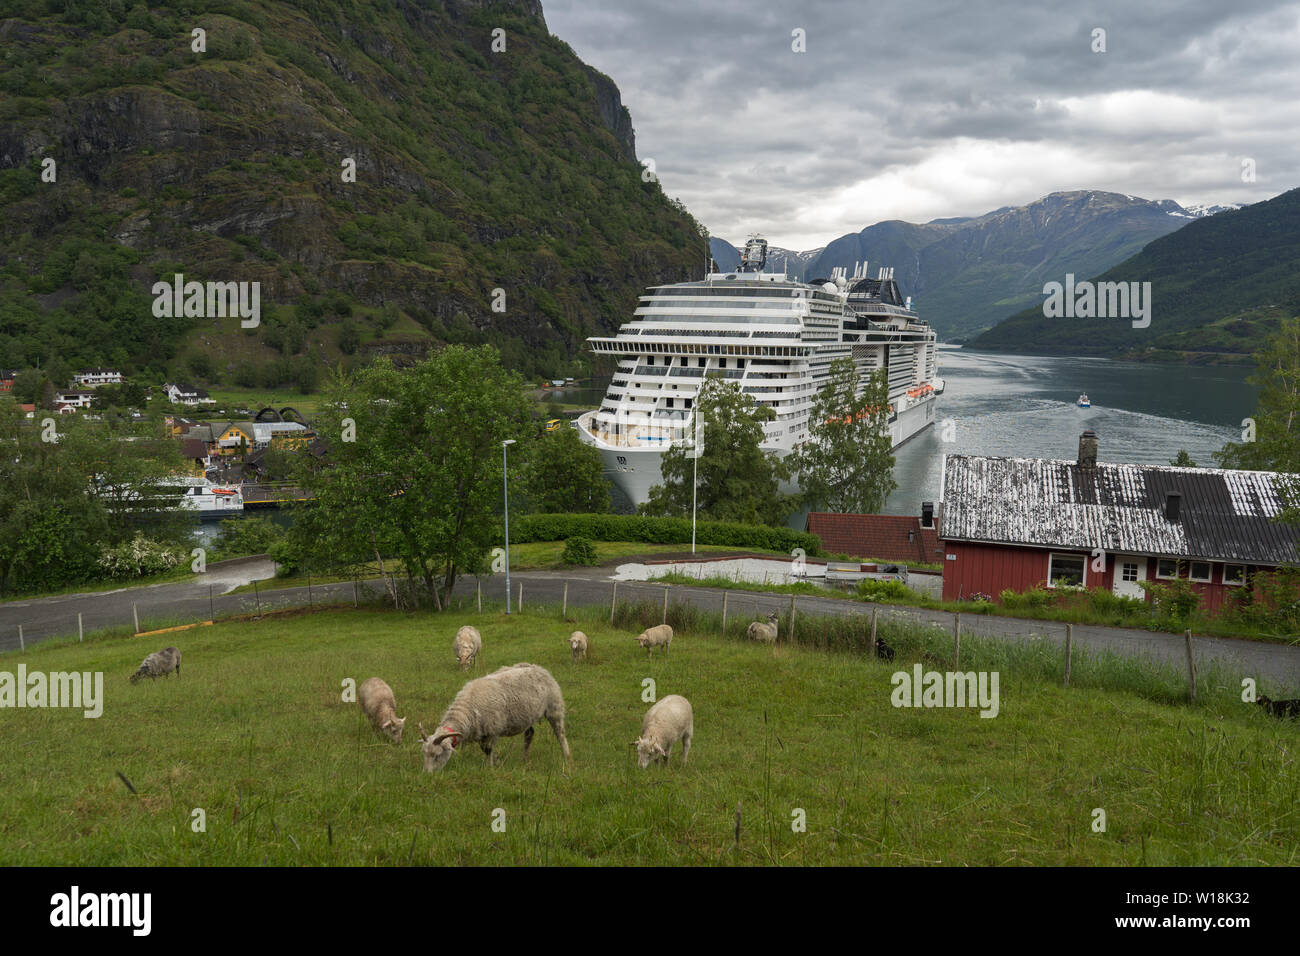 Flåm ou Flam, village de destination touristique Aurland en Norvège, la zone protégée par l'UNESCO. Vue sur le fjord et de croisière stationné au port de flam. Banque D'Images